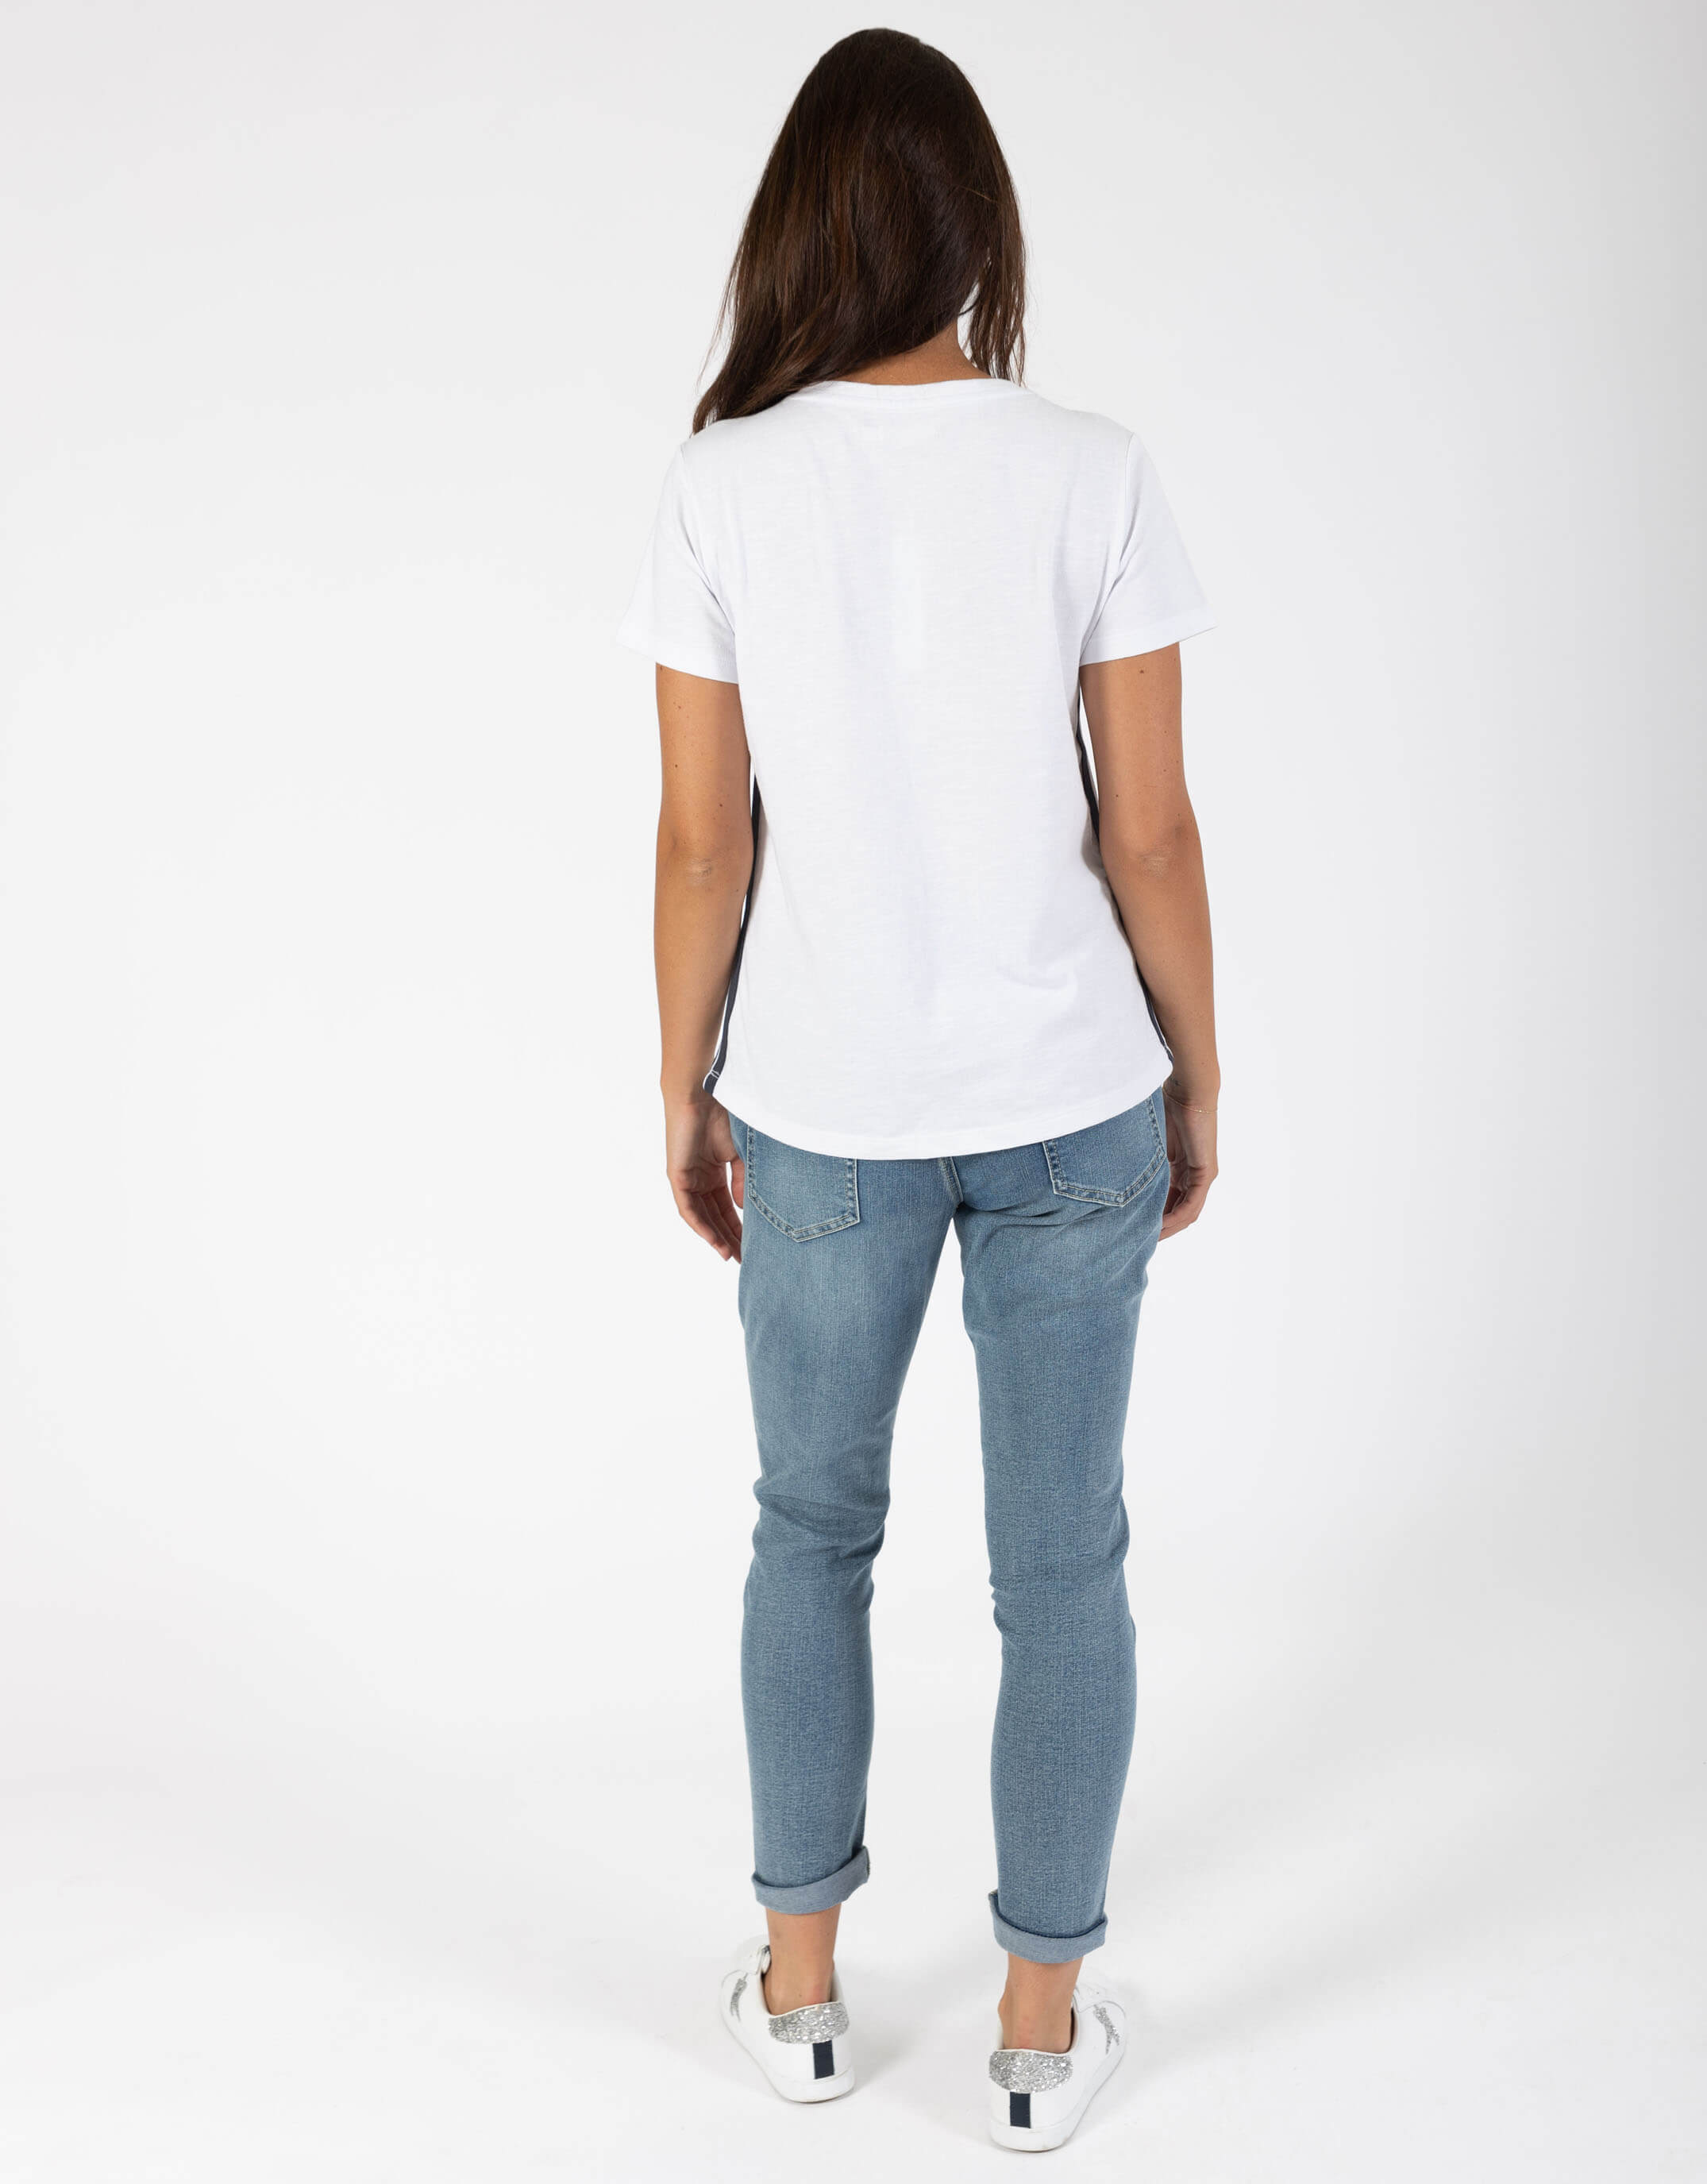 white-co-paris-short-sleeve-tshirt-white-womens-clothing